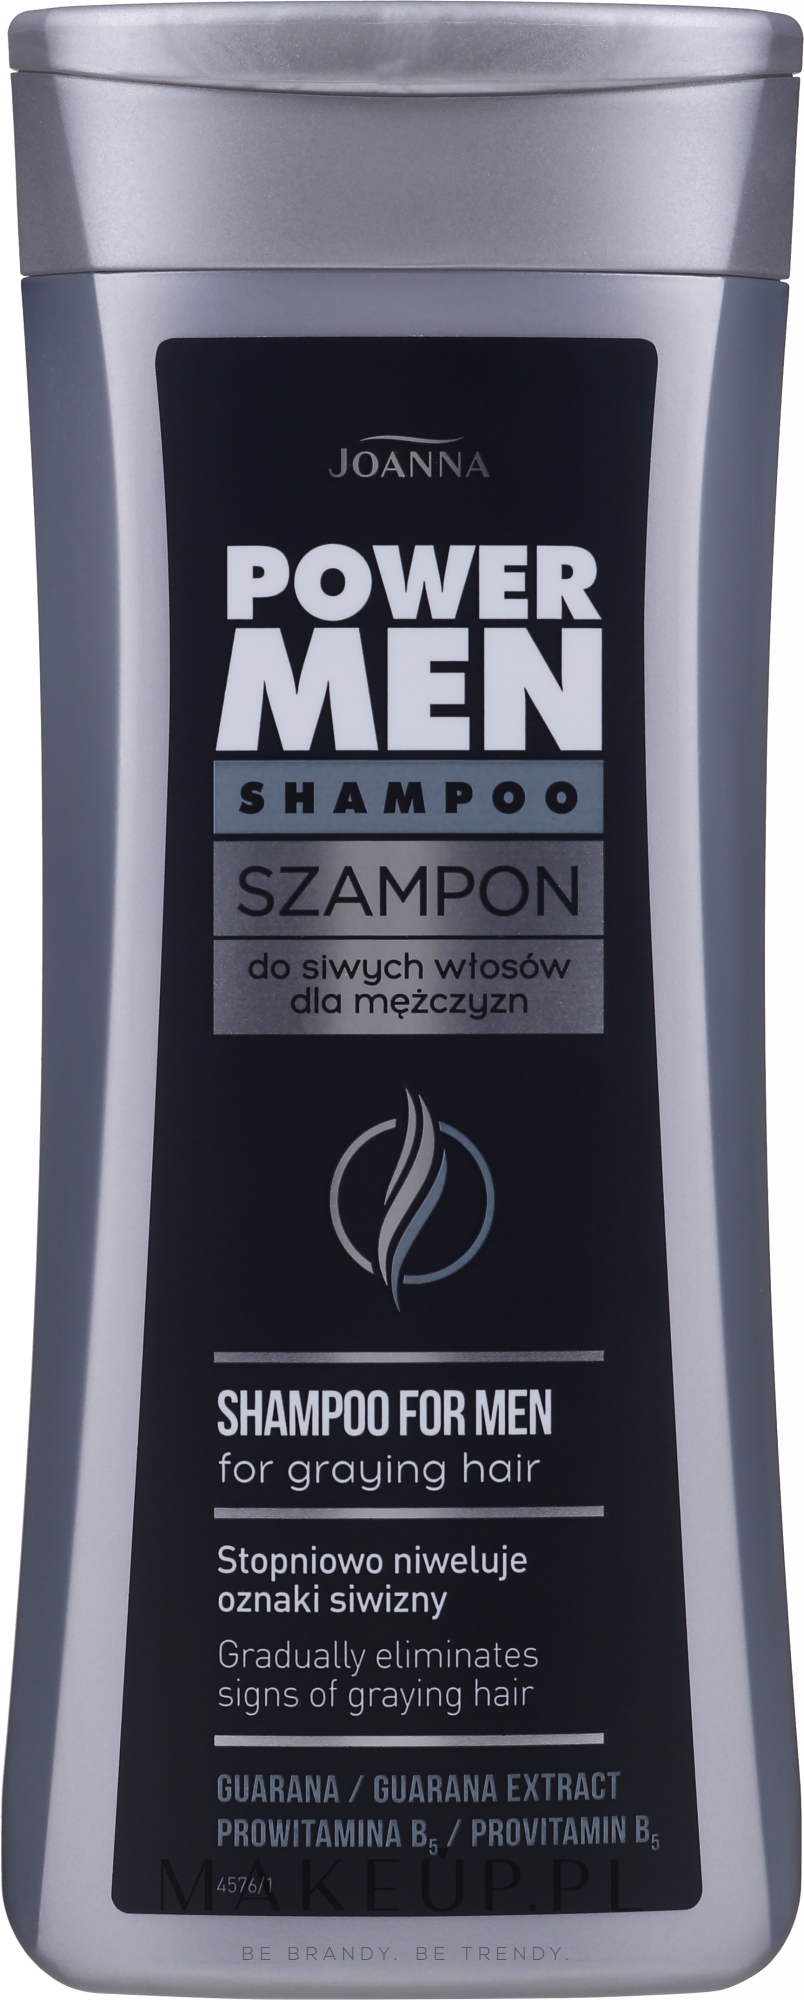 szampon meski do siwiejacych wlosow